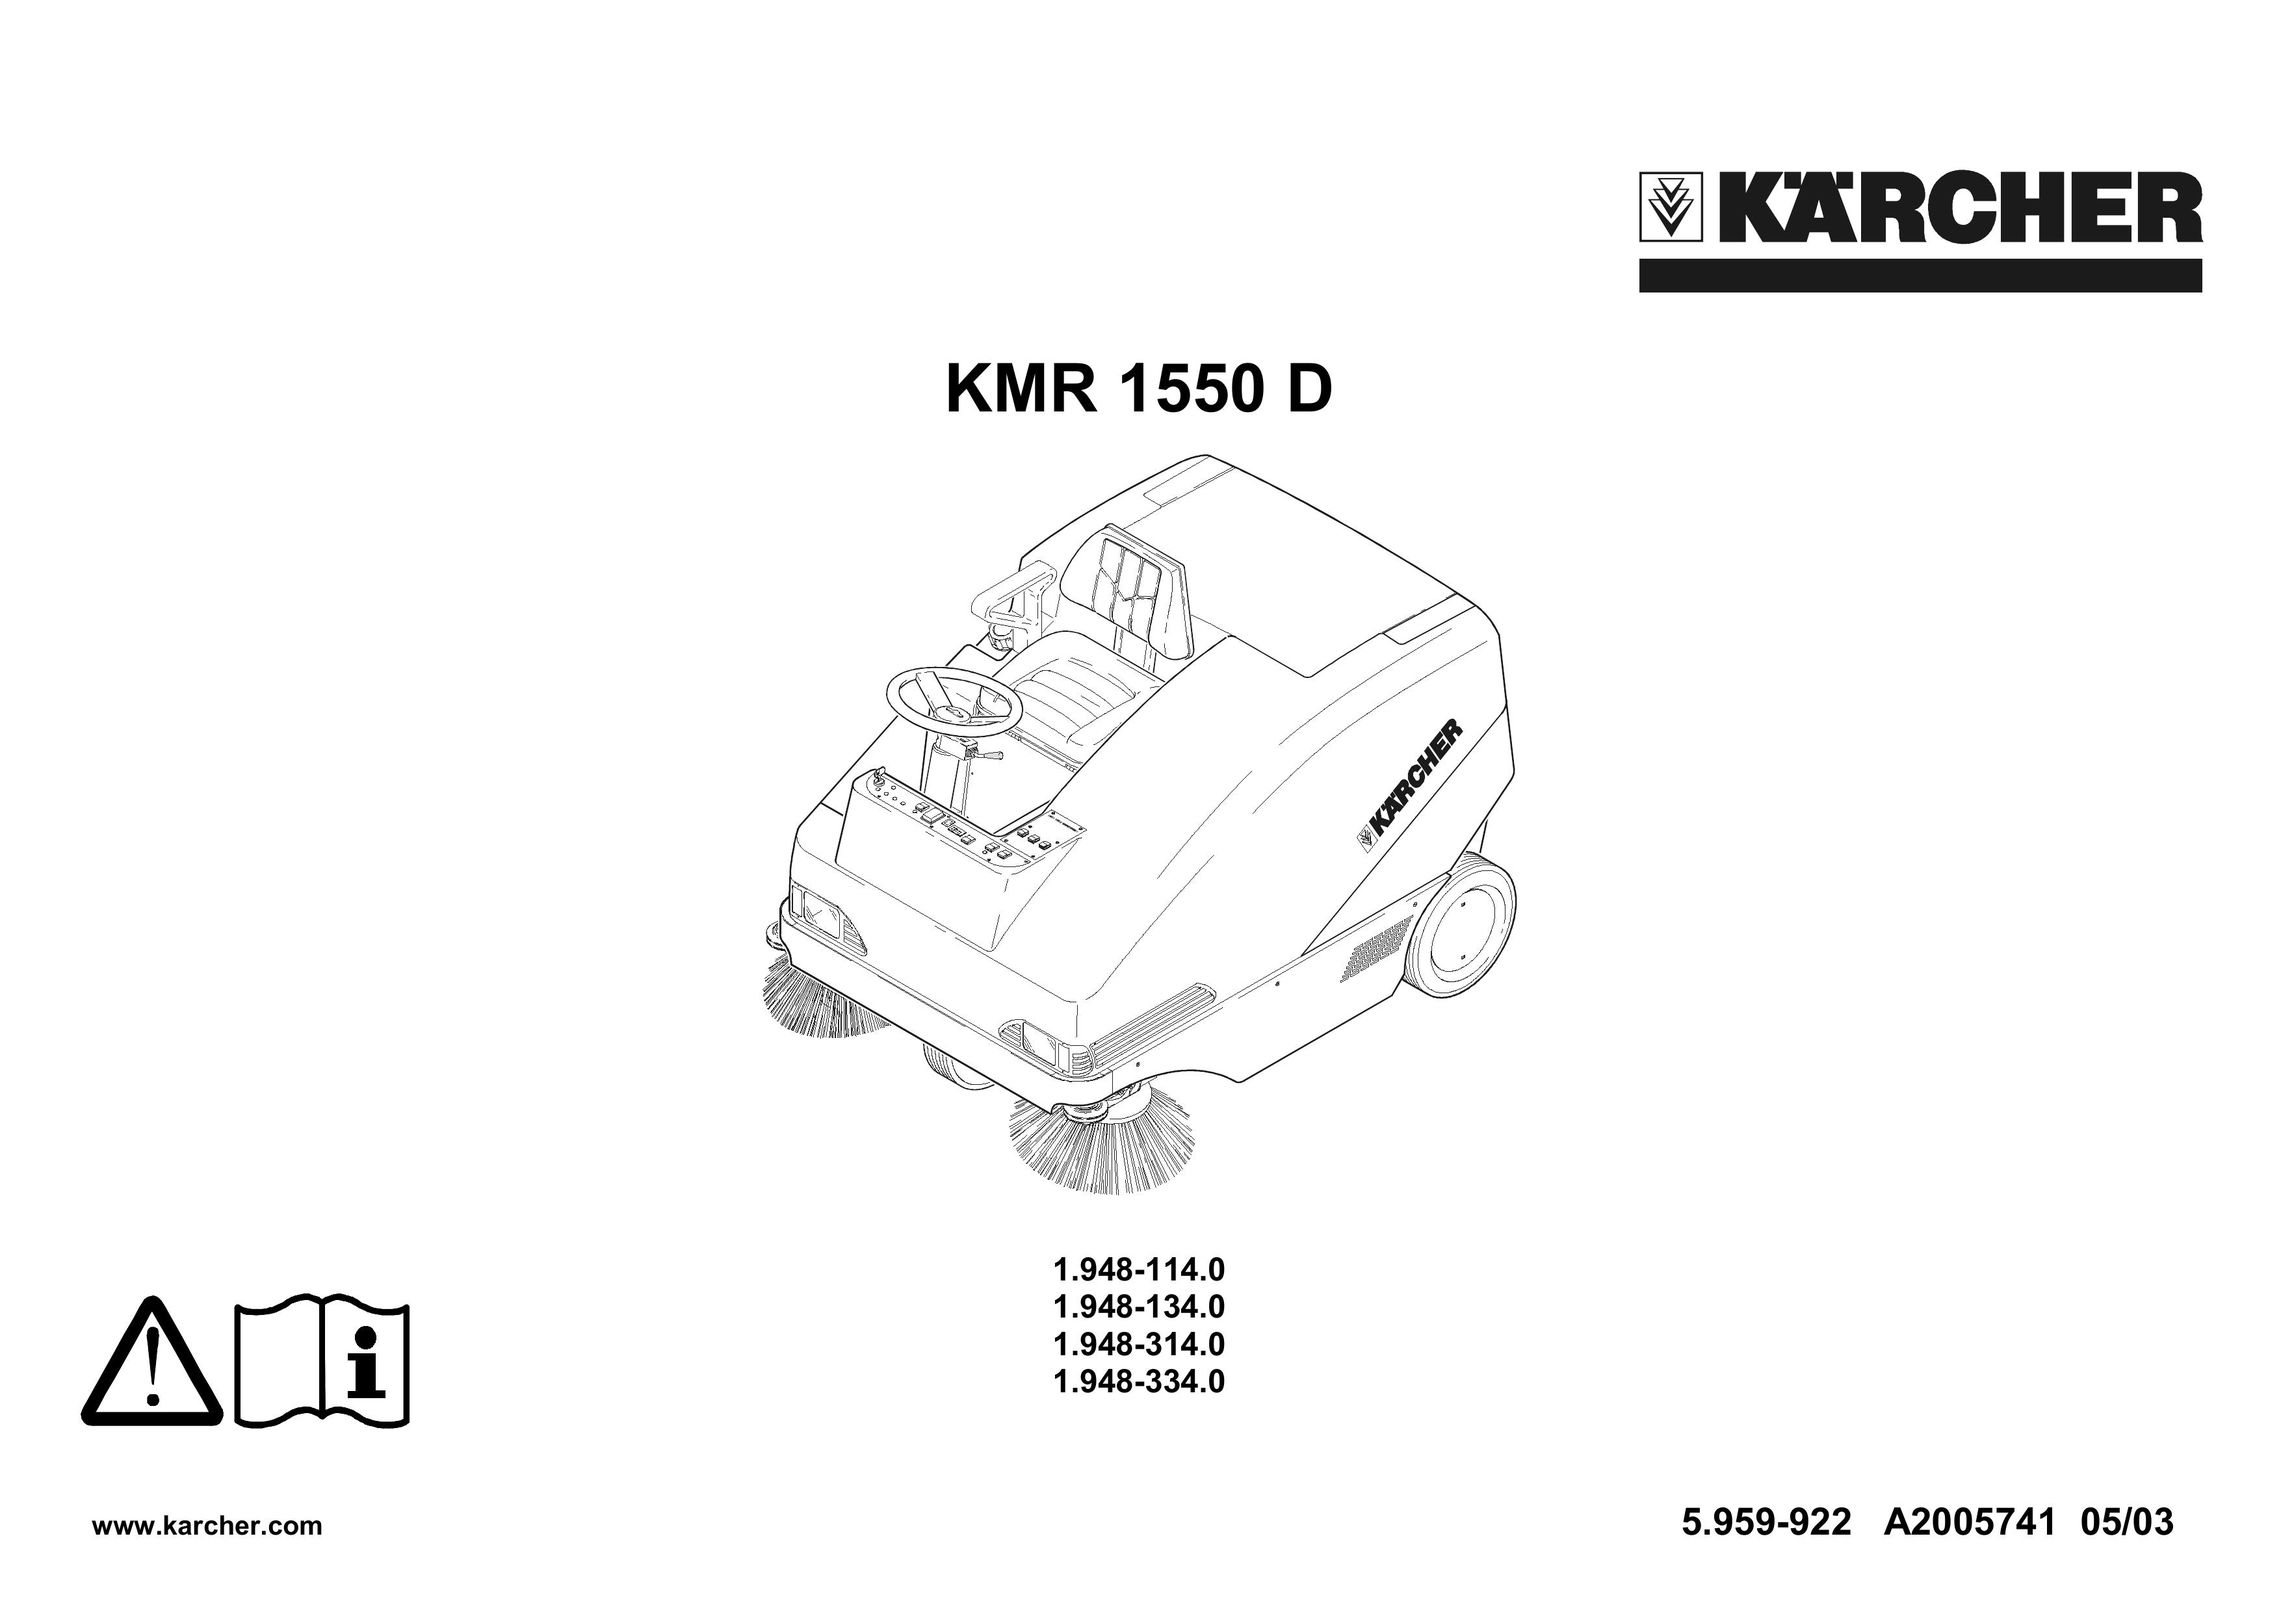 Karcher KMR 1550 D Vacuum Cleaner User Manual